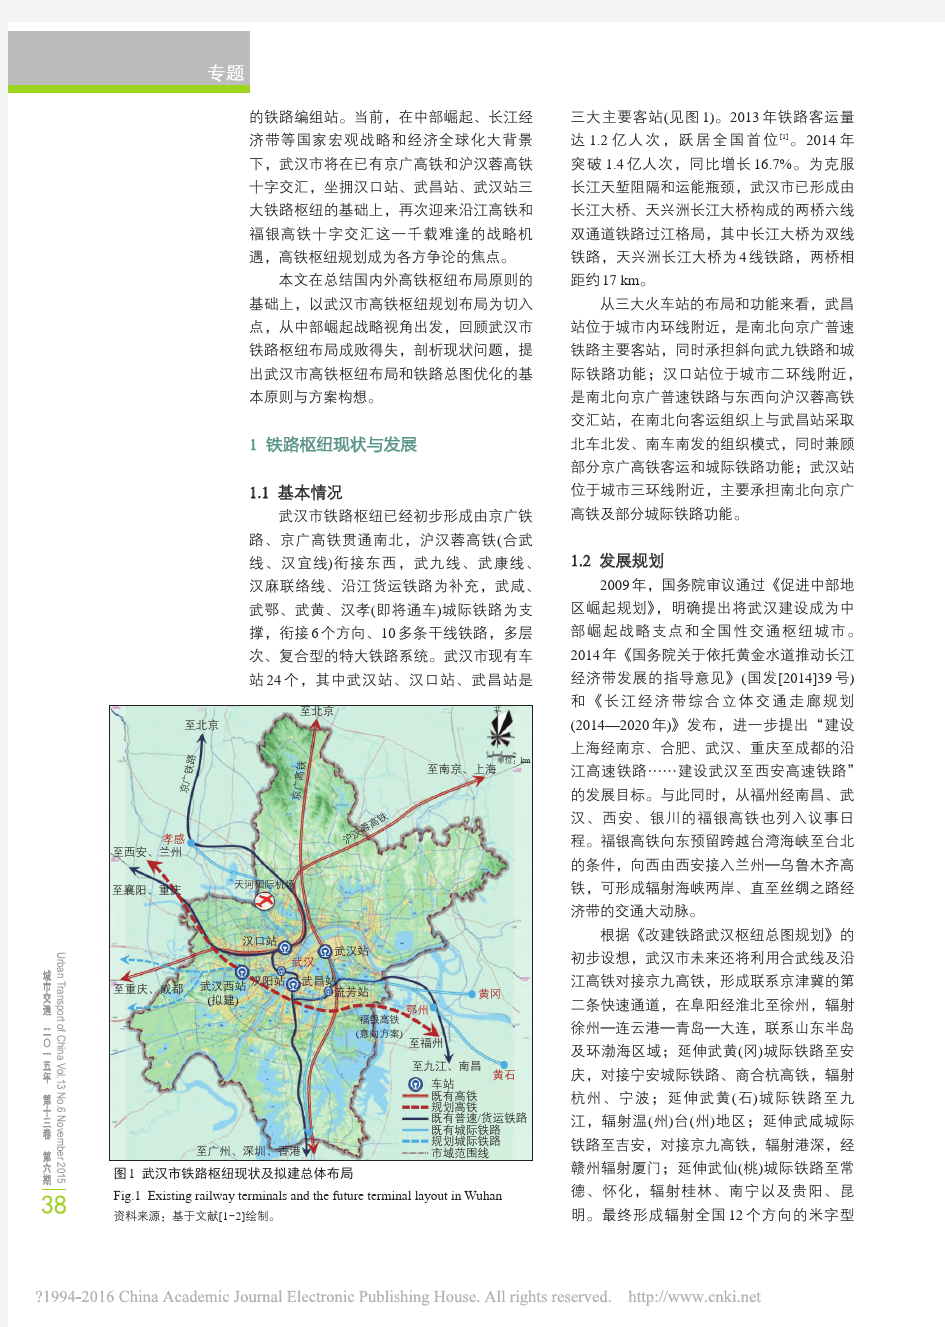 武汉市高铁枢纽选址及铁路总体布局优化_张本涌